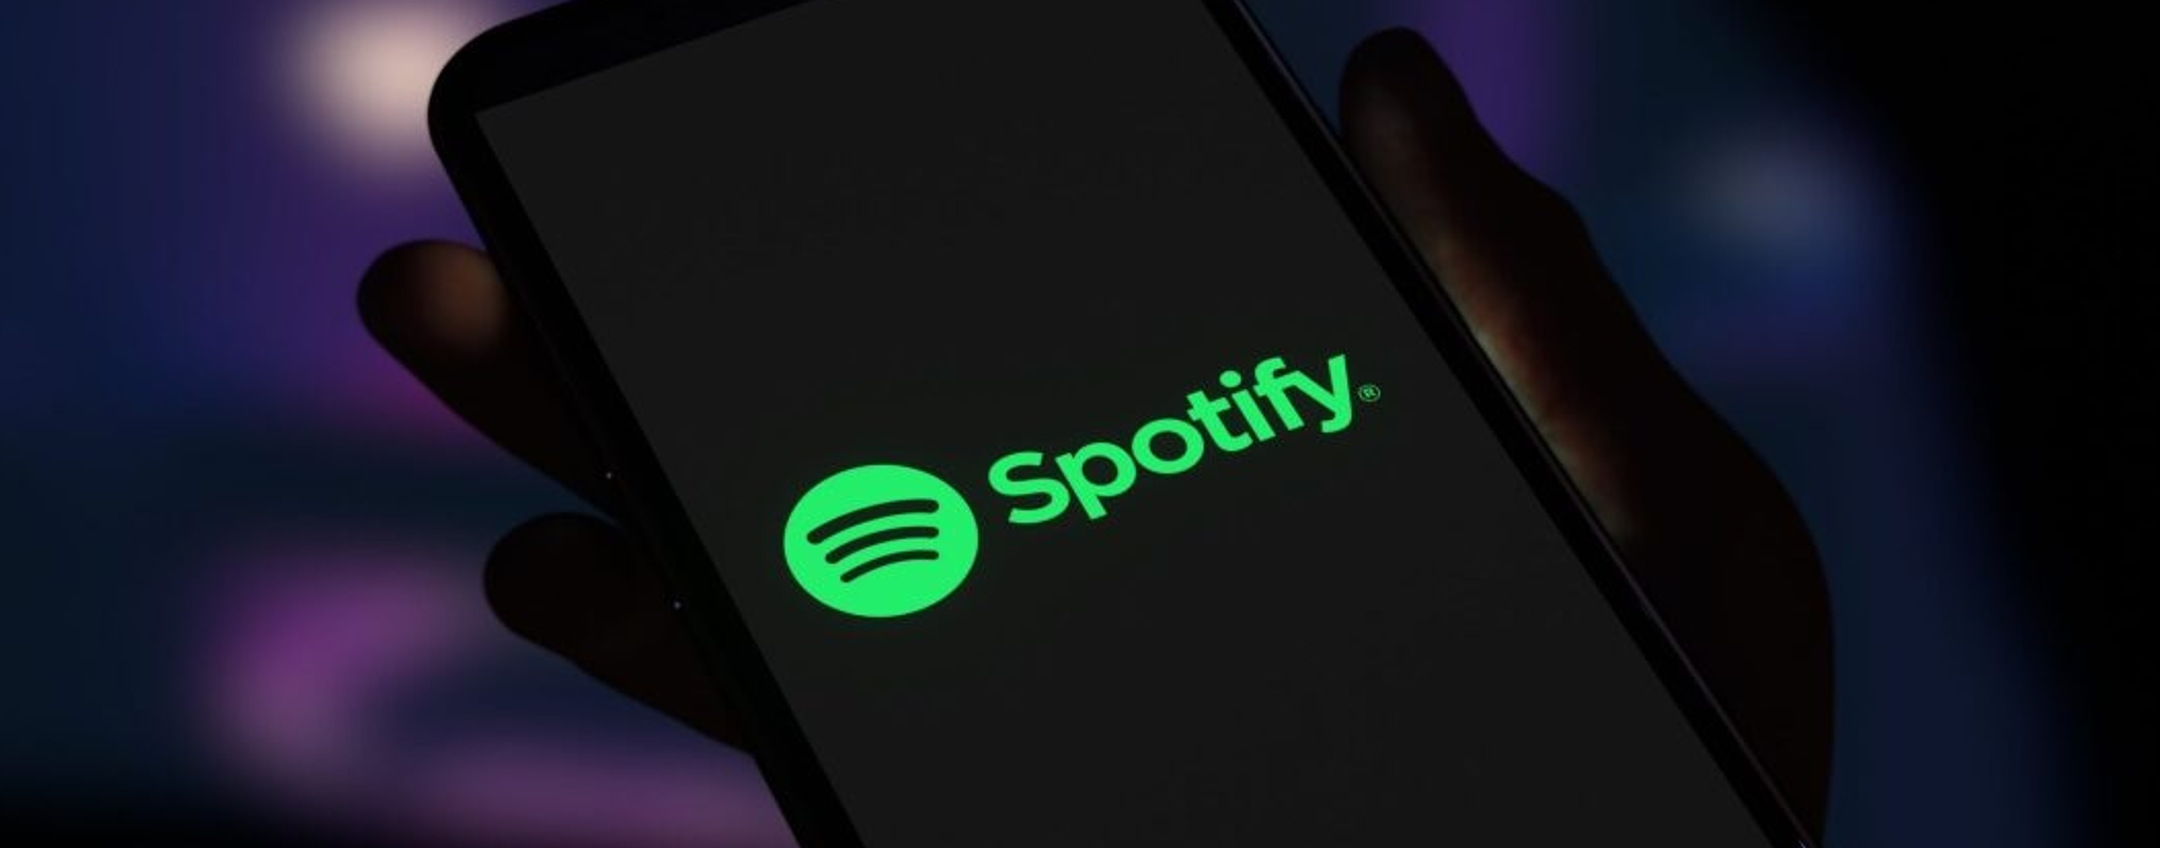 Spotify è down? In molti non accedono al servizio di streaming audio